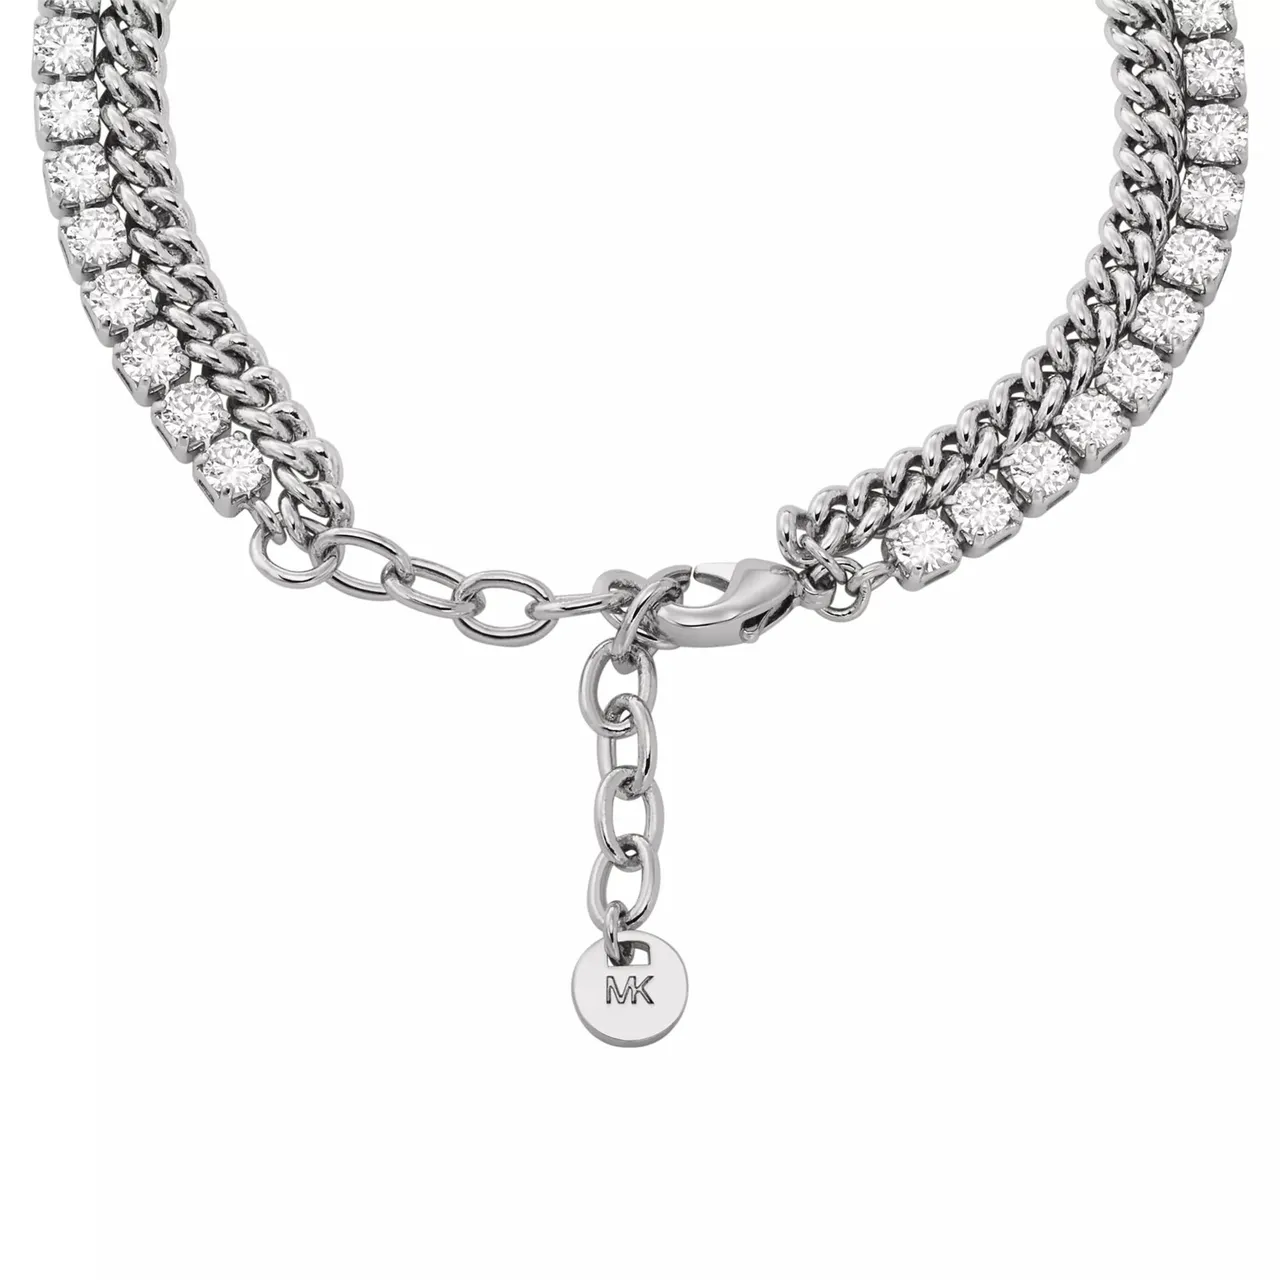 Michael Kors Bracelets - Platinum-Plated Mixed Tennis Double Layer Bracelet - silver - Bracelets for ladies